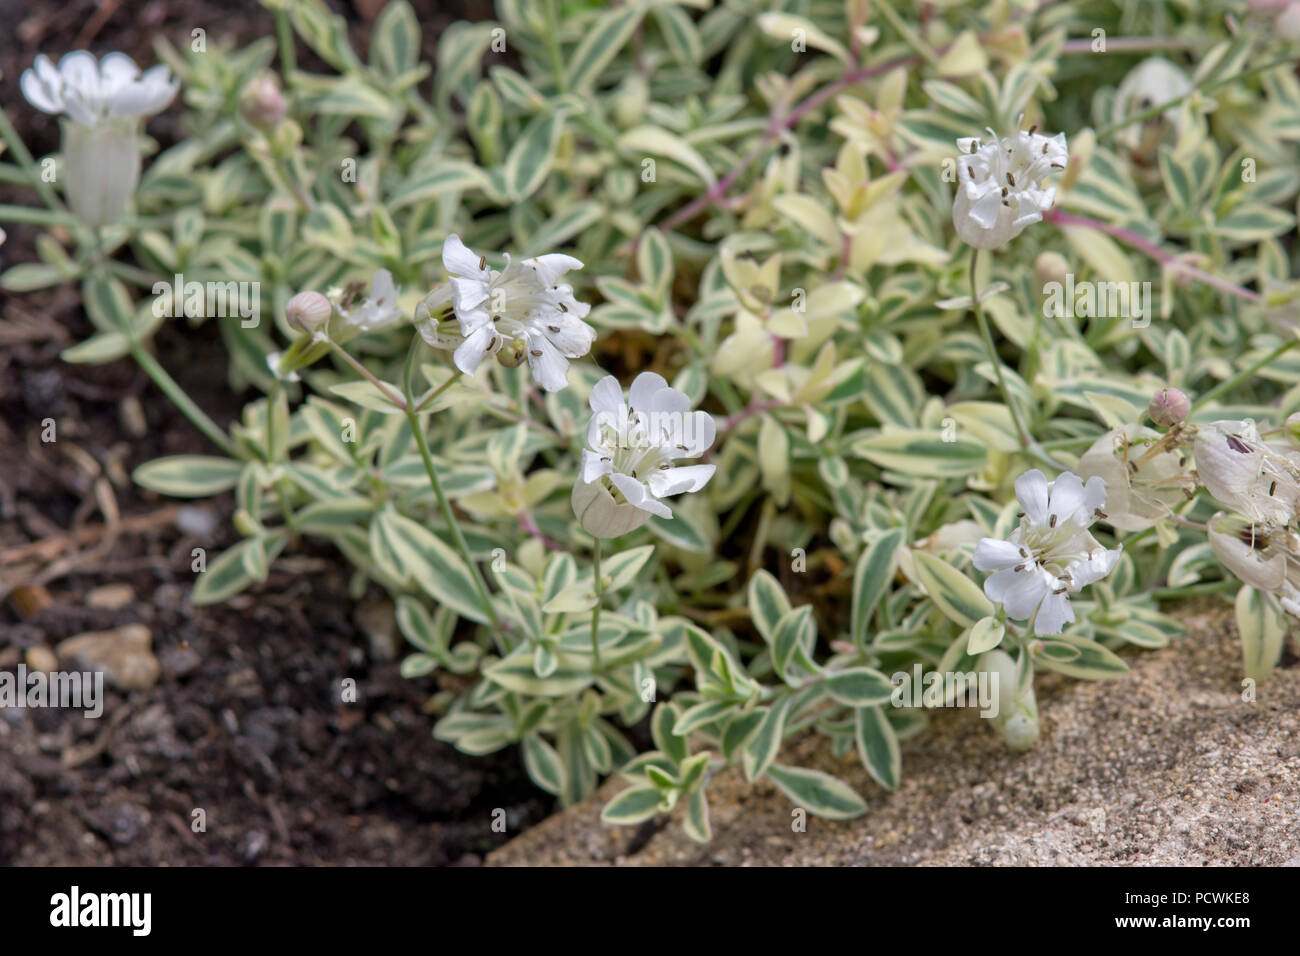 Silene uniflora 'Druett's Variegated' Stock Photo